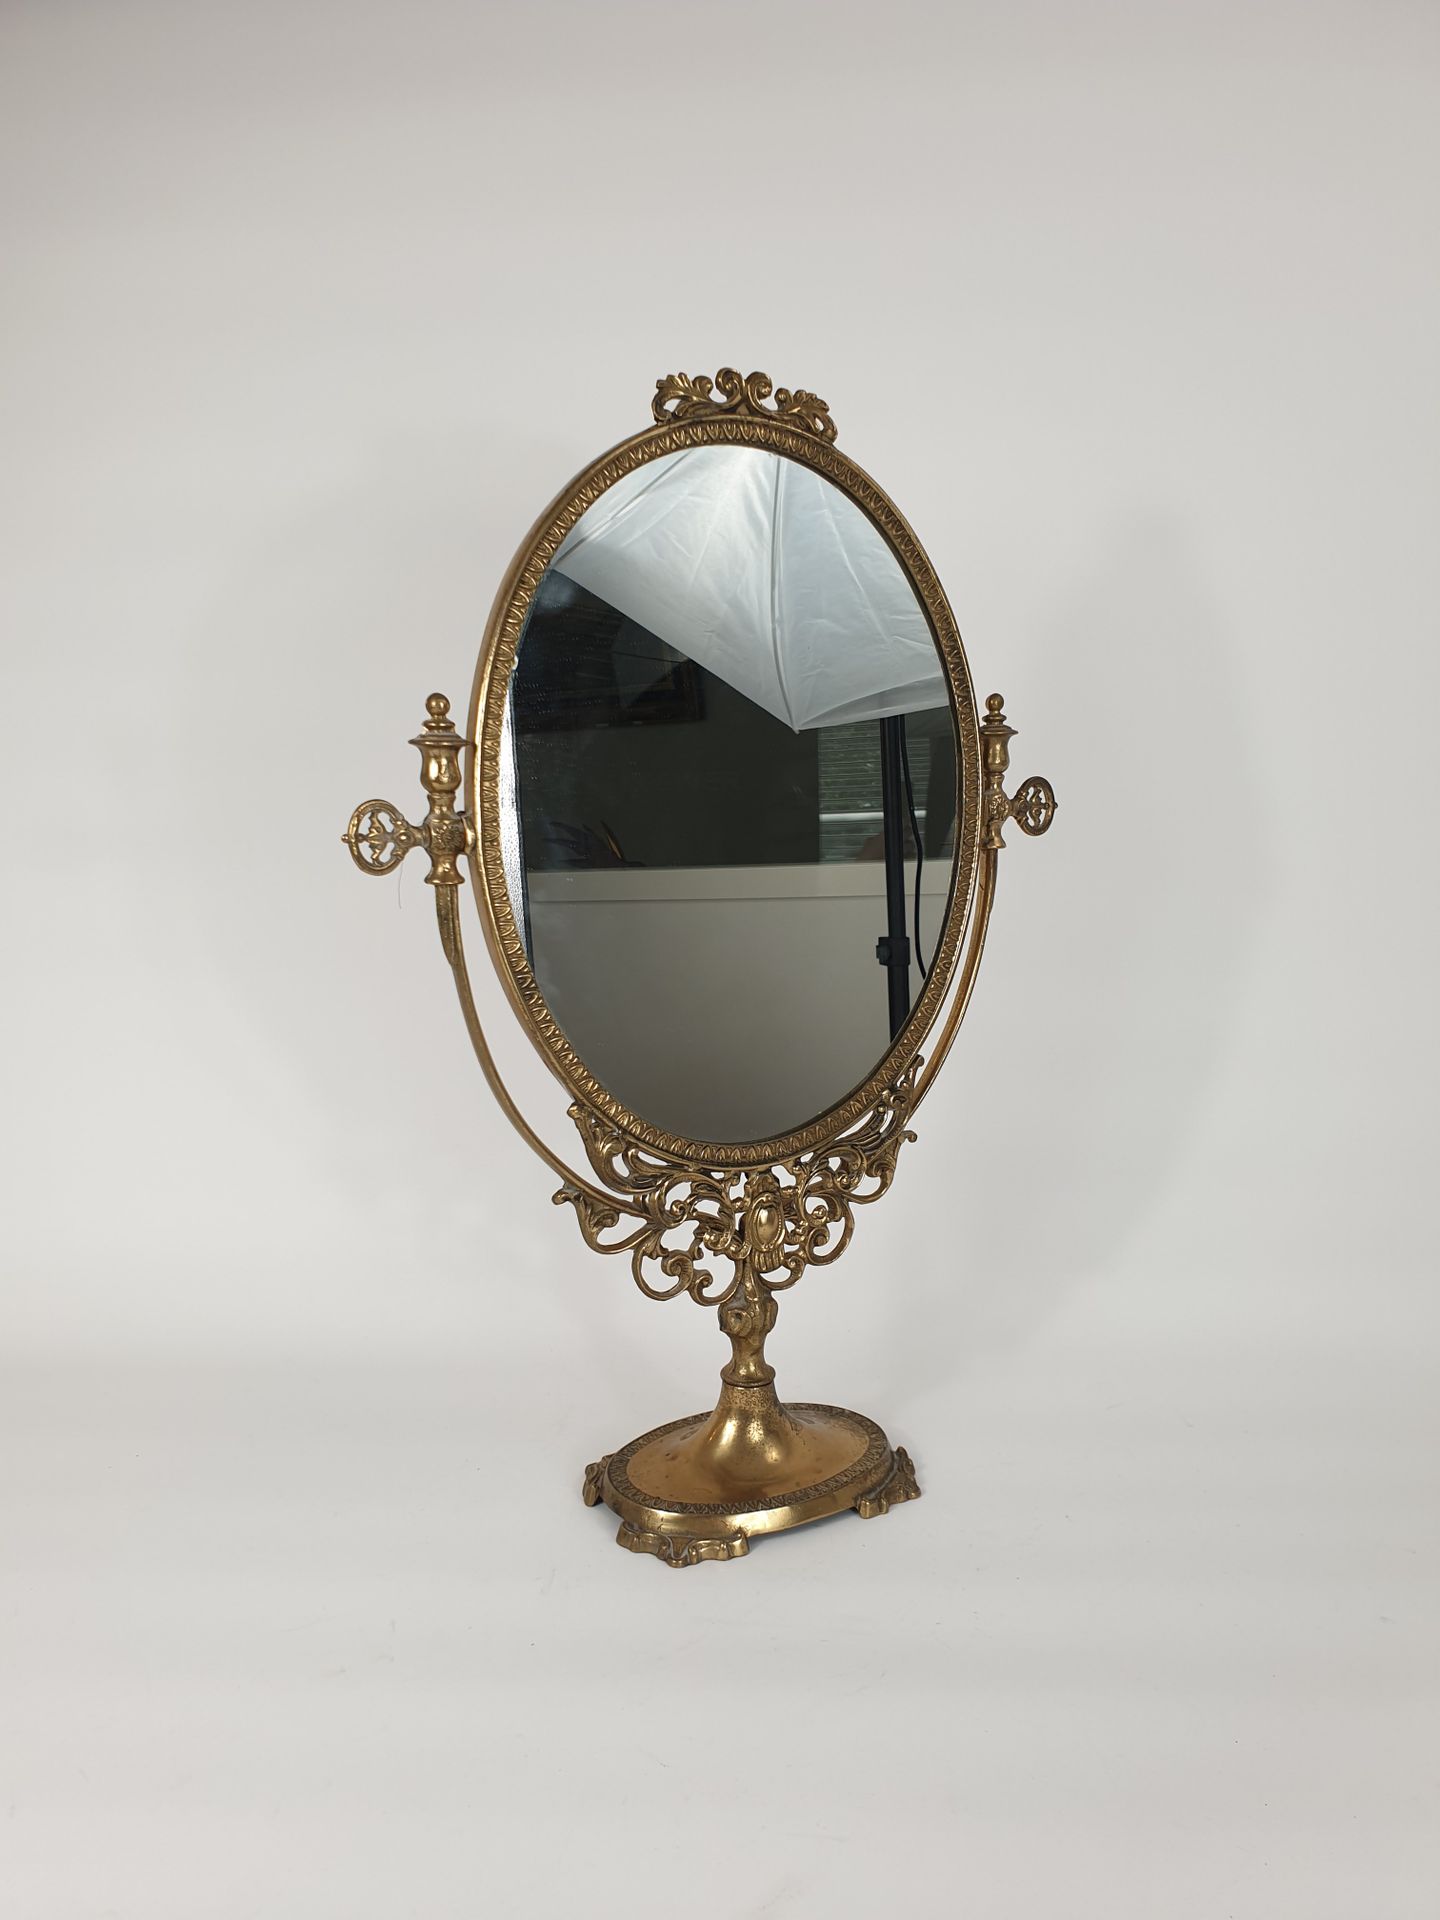 Null Miroir de table ovale basculant en laiton.
54,5 x 39 x 12 cm